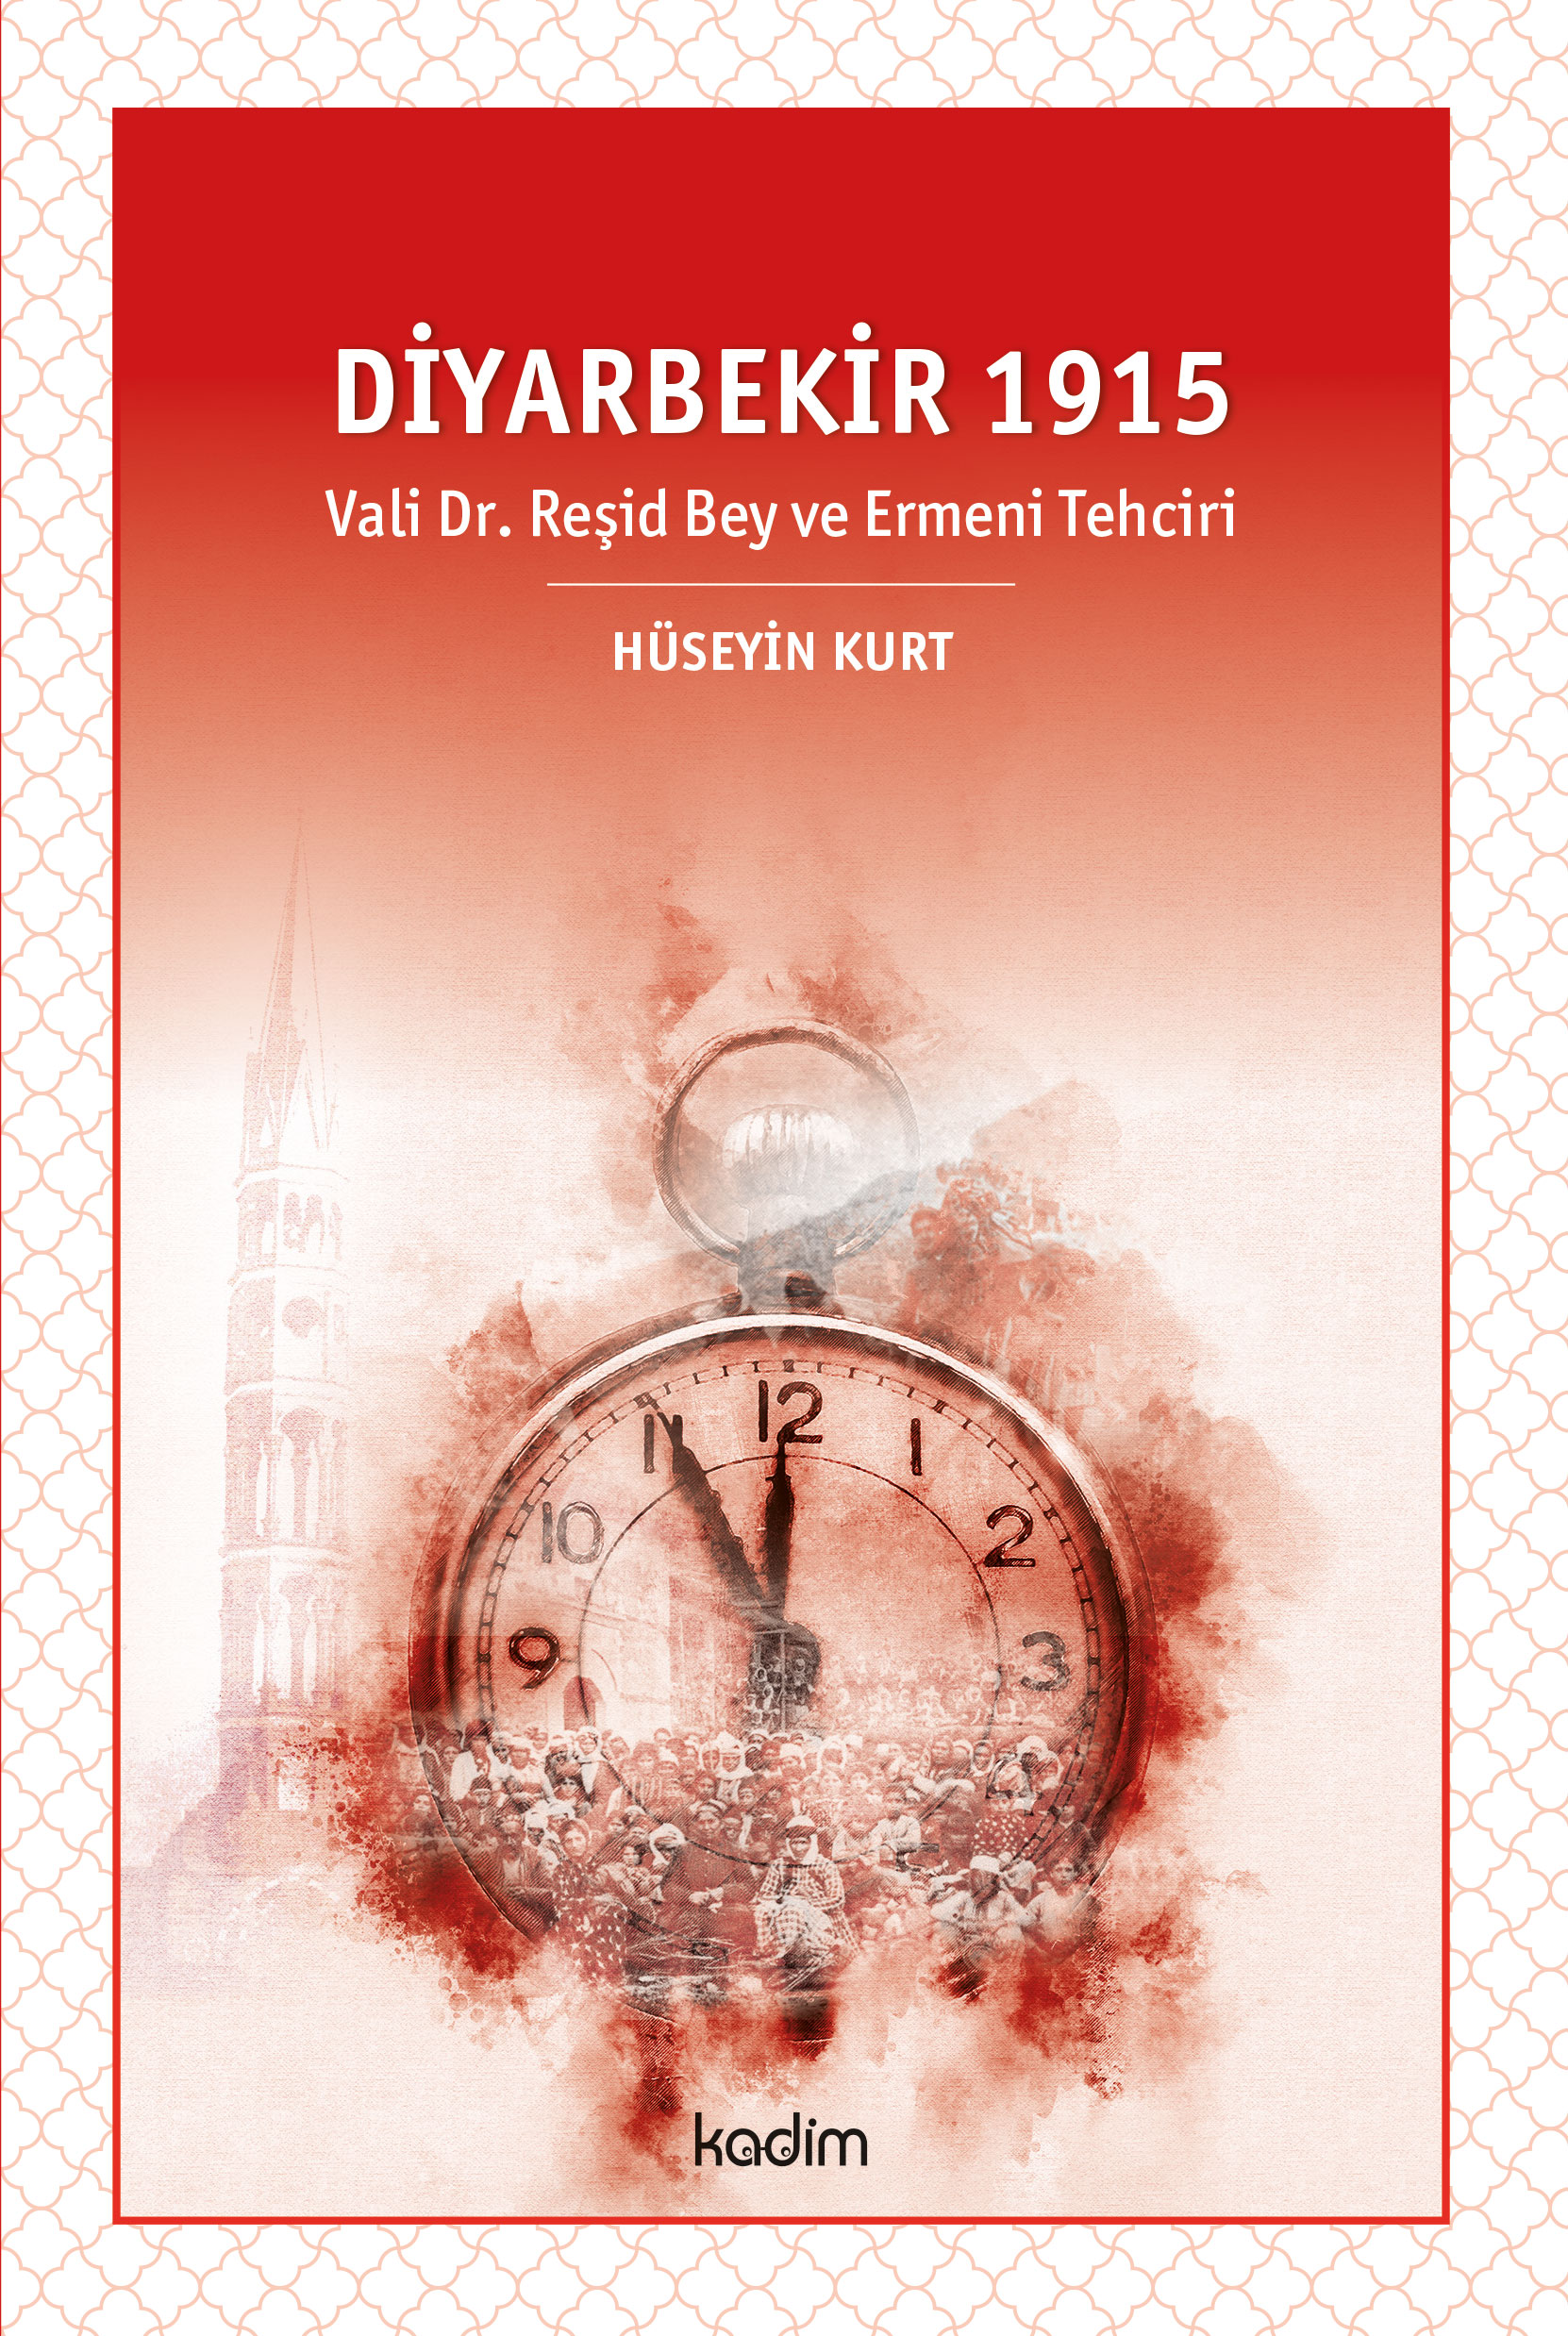 DİYARBEKİR 1915- Vali Dr. Reşid Bey ve Ermeni Tehciri